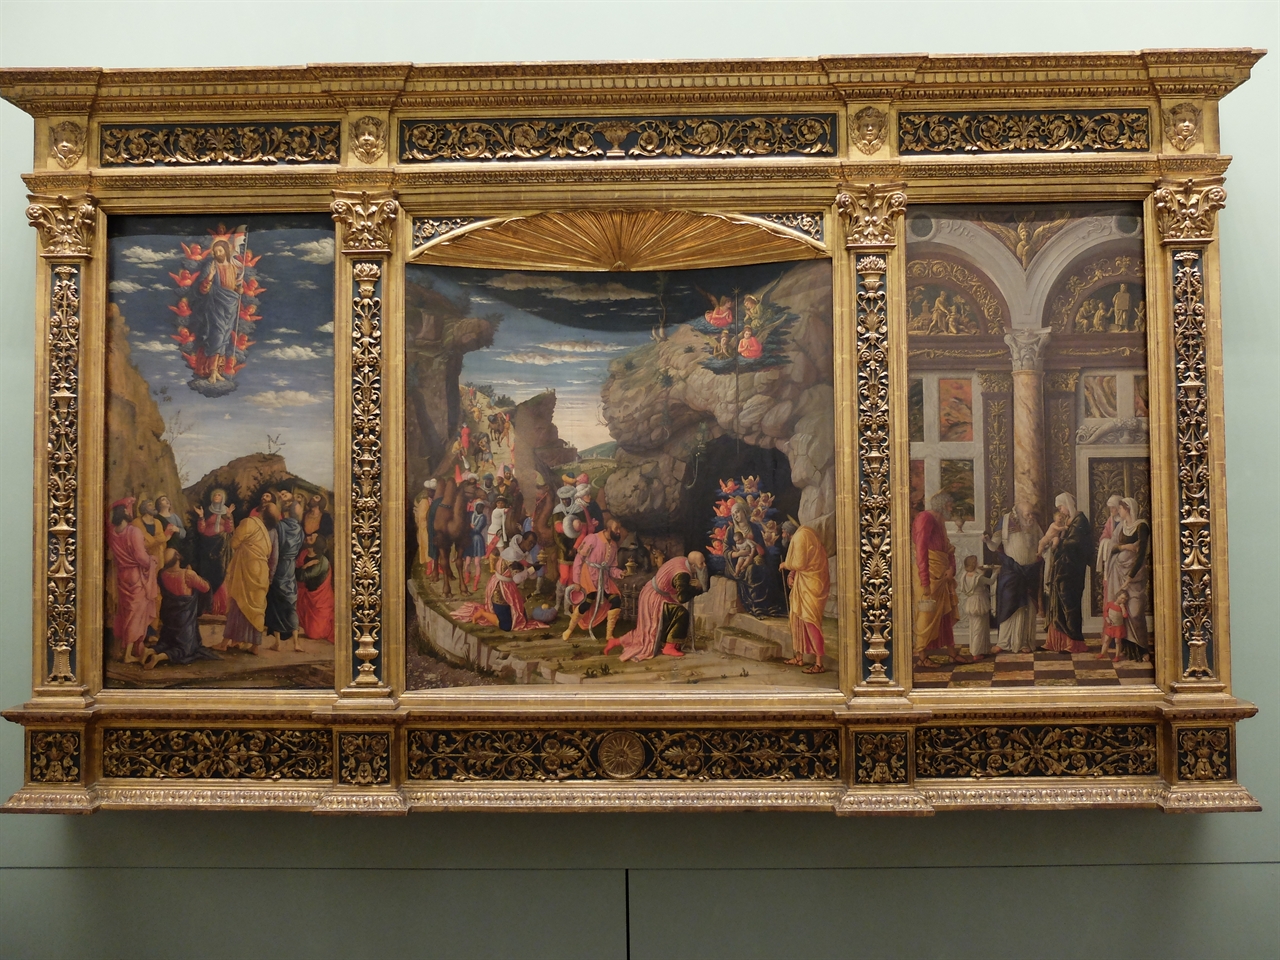 안드레아 만테냐, '예수 승천, 동방박사의 경배, 할례'(왼쪽부터), 피렌체 우피치 미술관. 북이탈리아 르네상스의 대표적 화가 만테냐의 그림으로 아래에서 위로 바라보는 단축법을 사용했습니다.